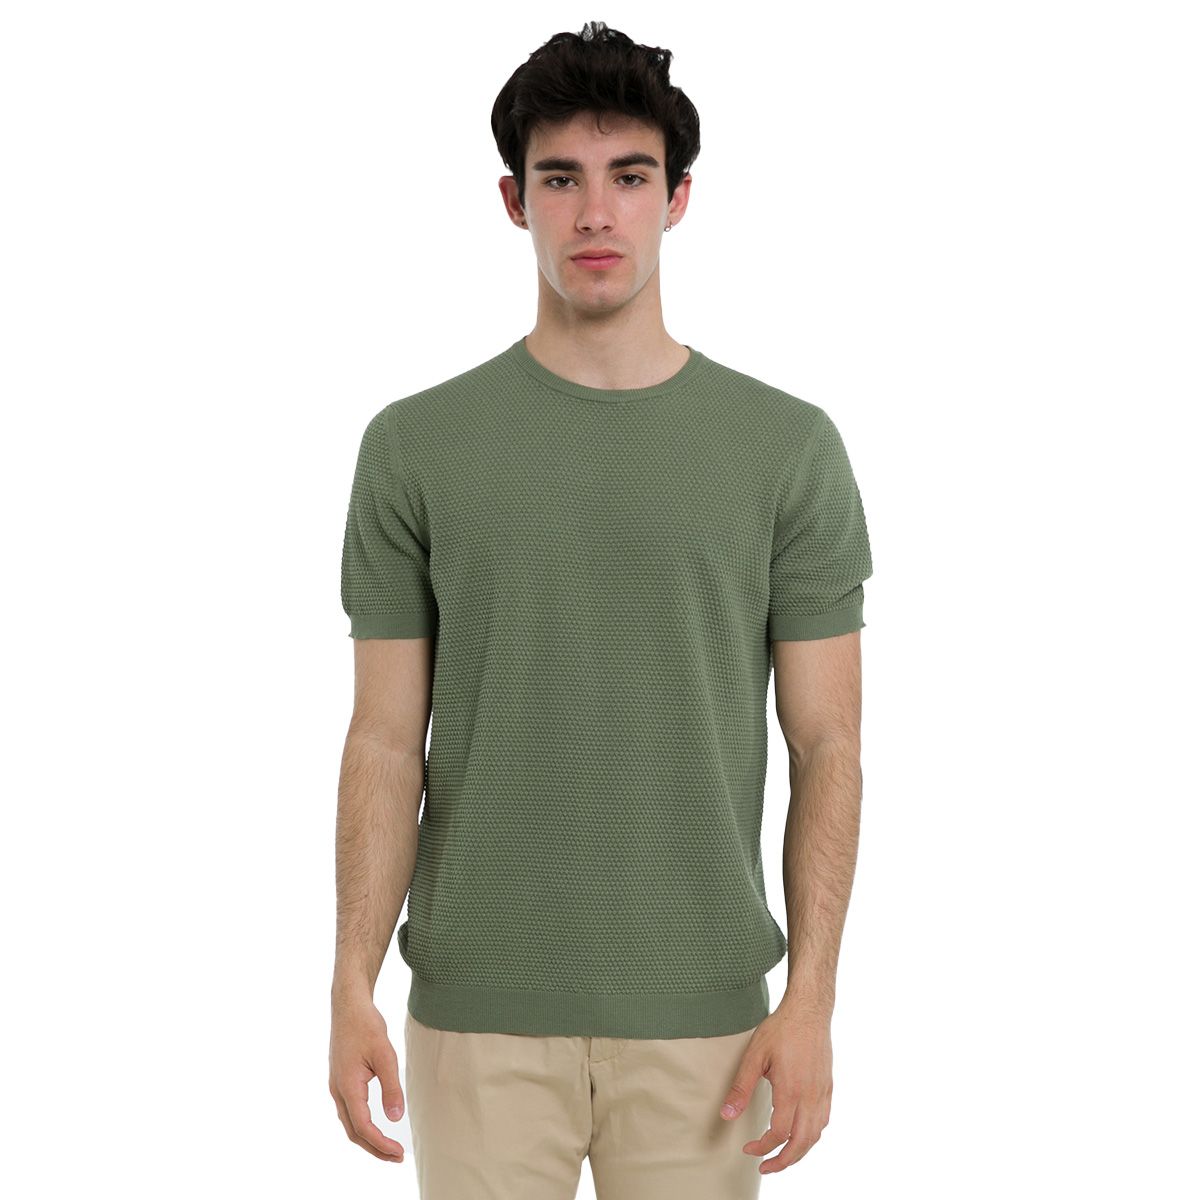 Elounta Crew Neck T-Shirt/Green